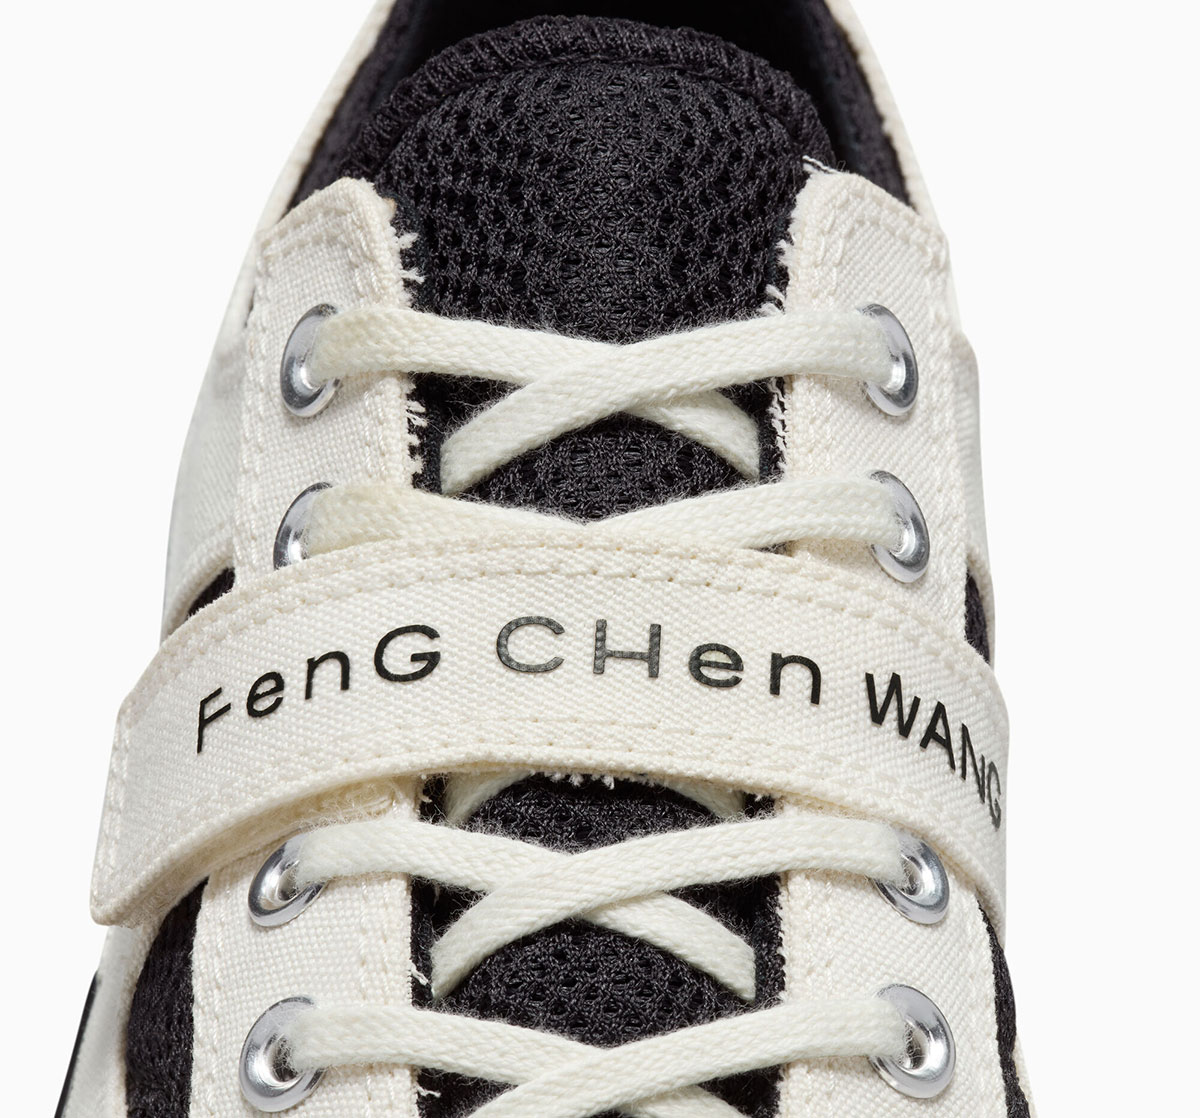 Feng Chen Wang Converse Chuck 70 A08857c 4